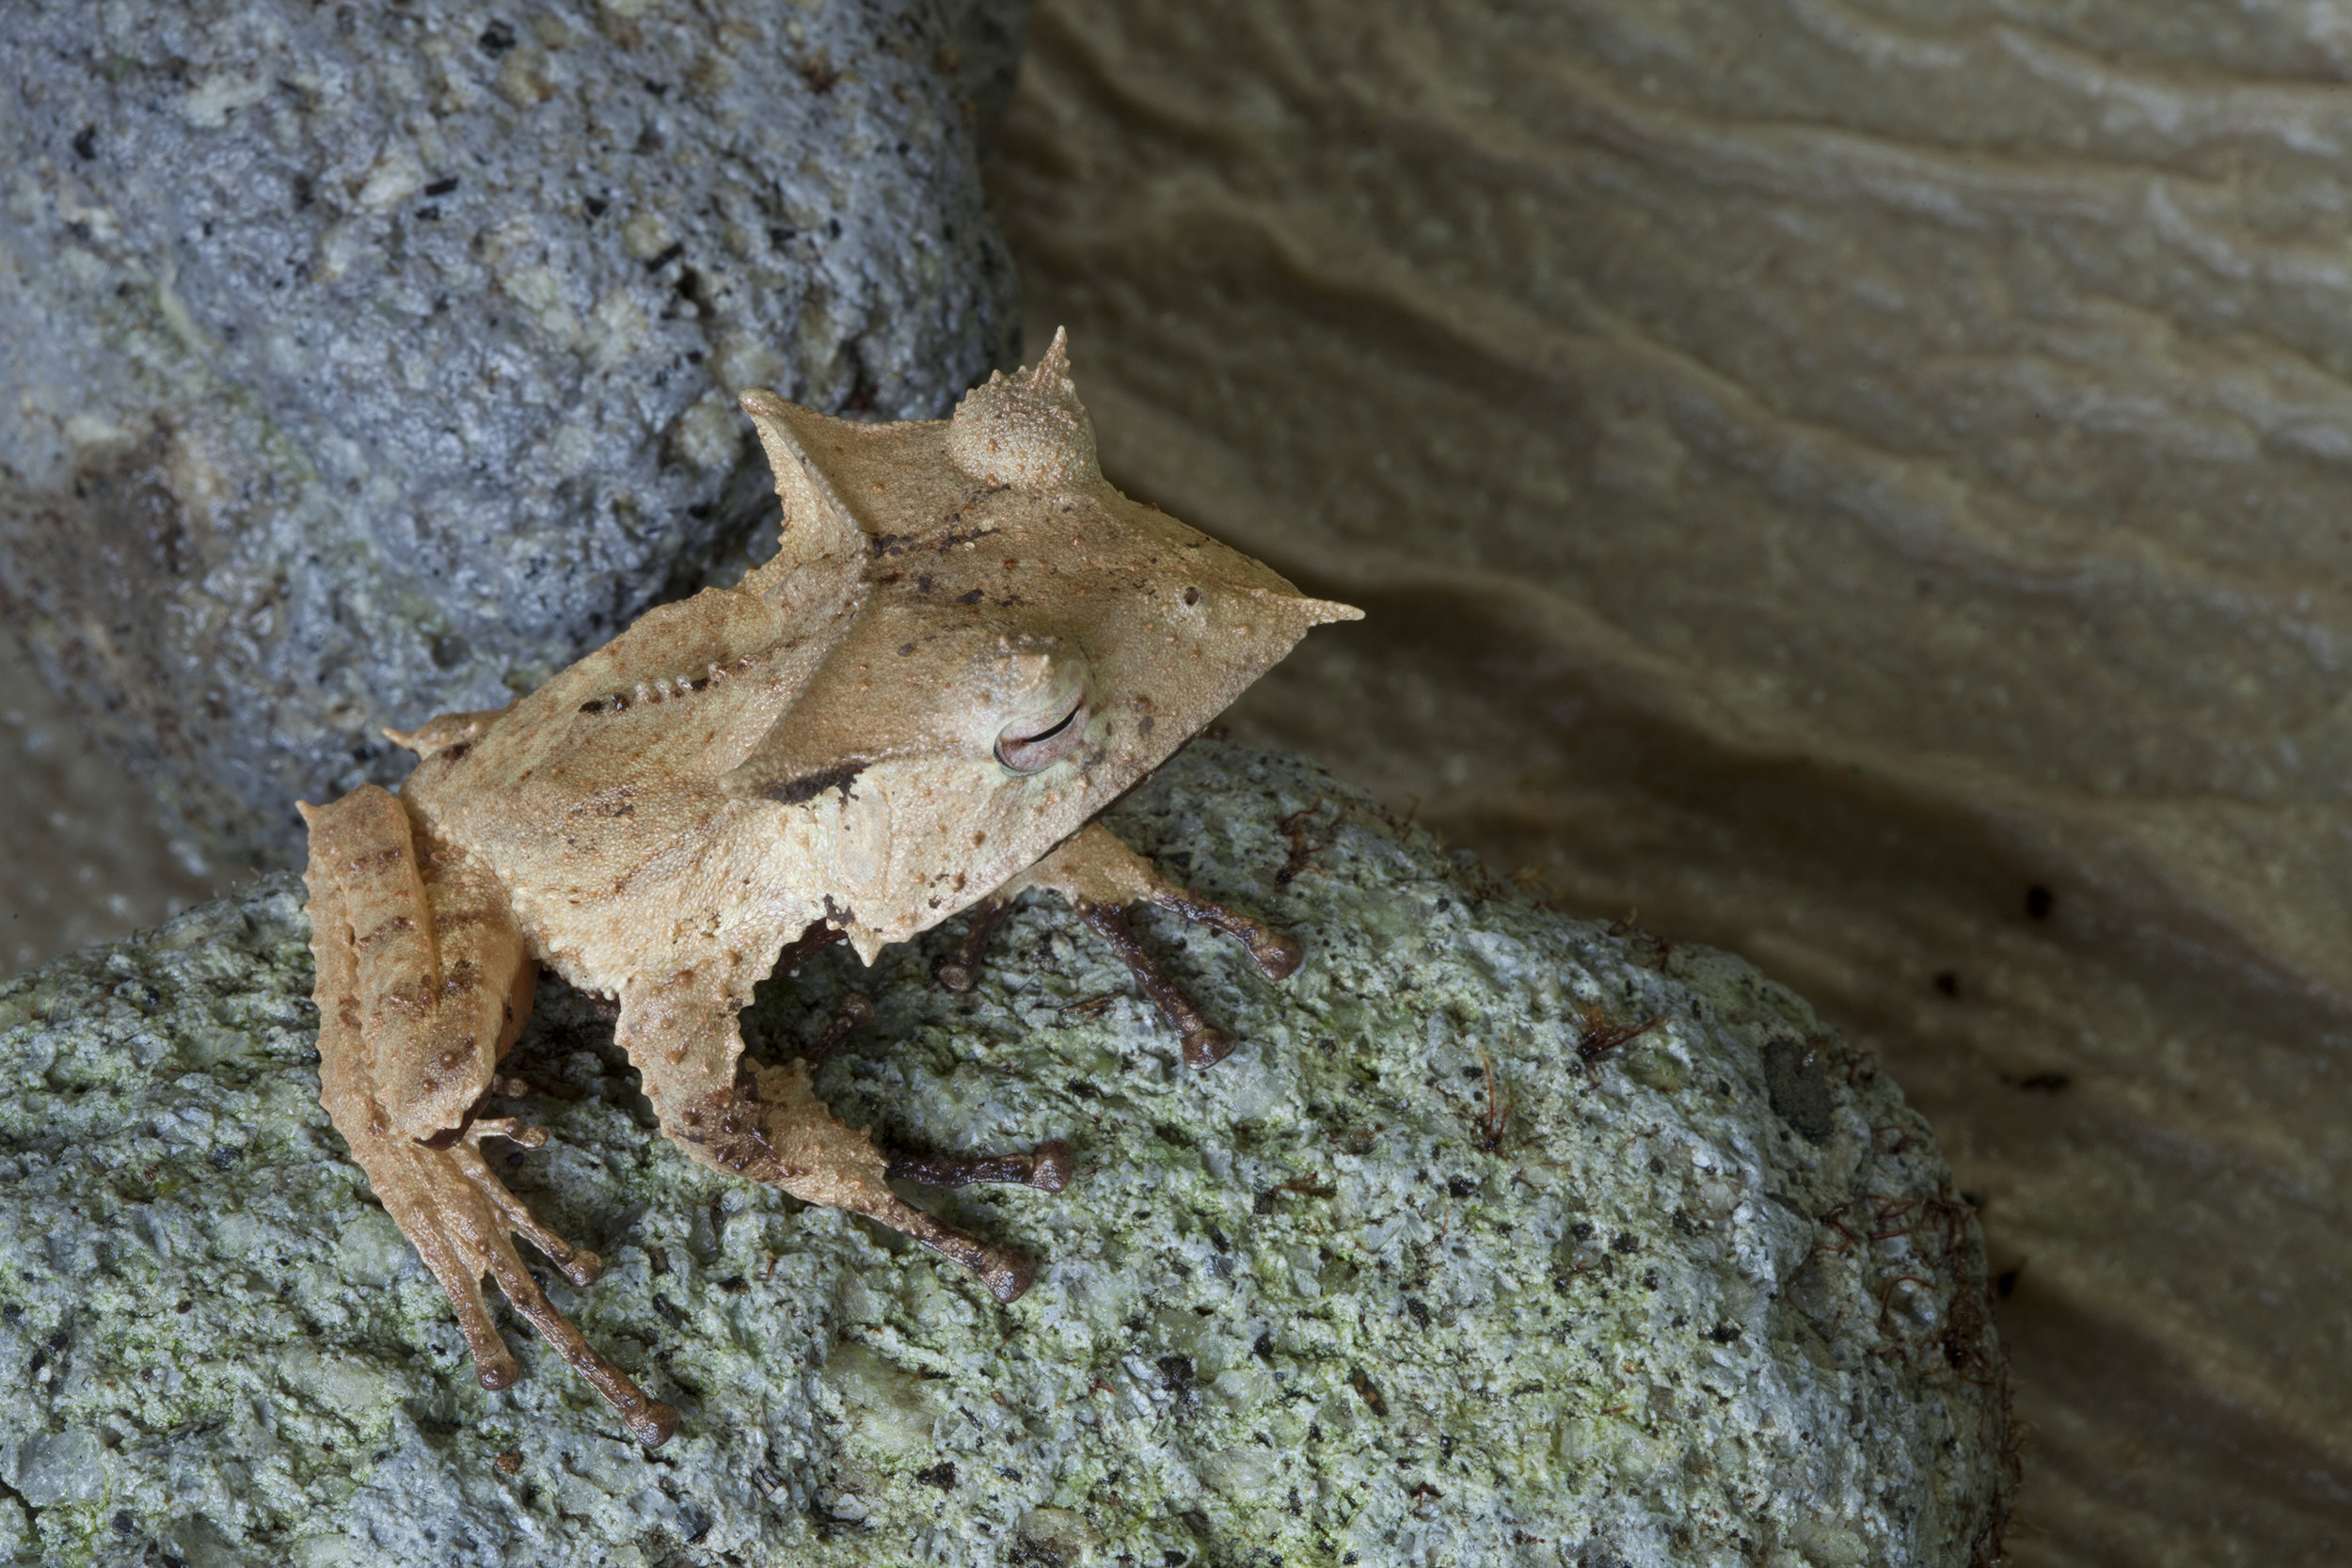  Casque-headed frog  Hemiphractus fasciatus,&nbsp; El Valle Amphibian Conversation Center, Panama 